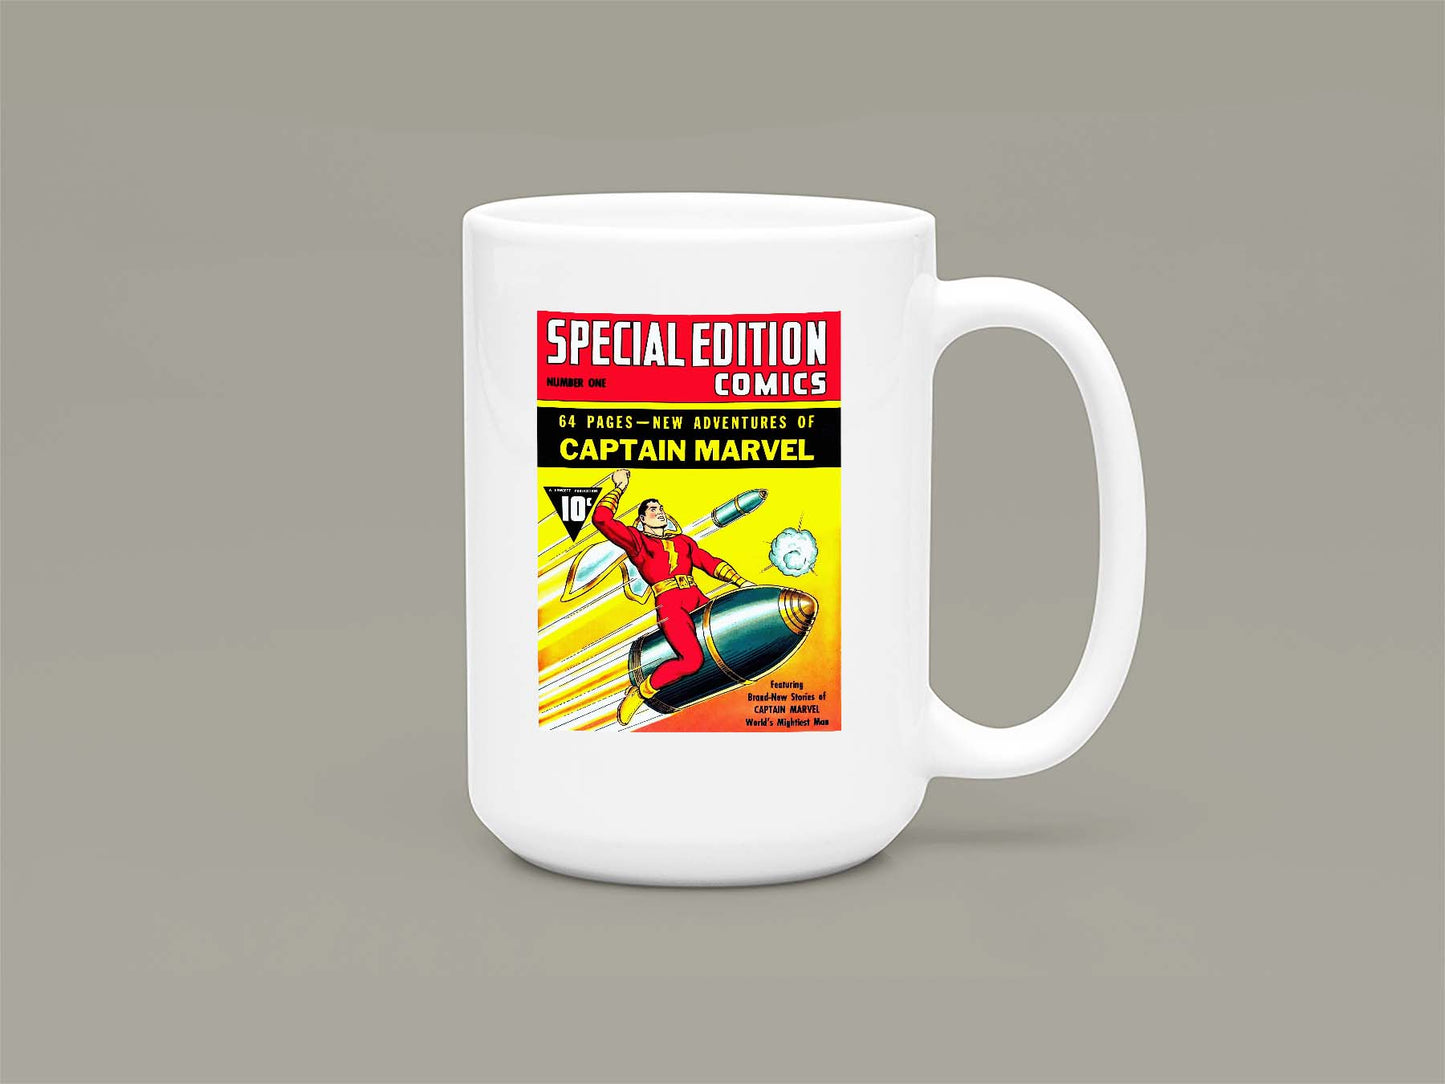 Special Edition Comics No1 Mug 15oz 